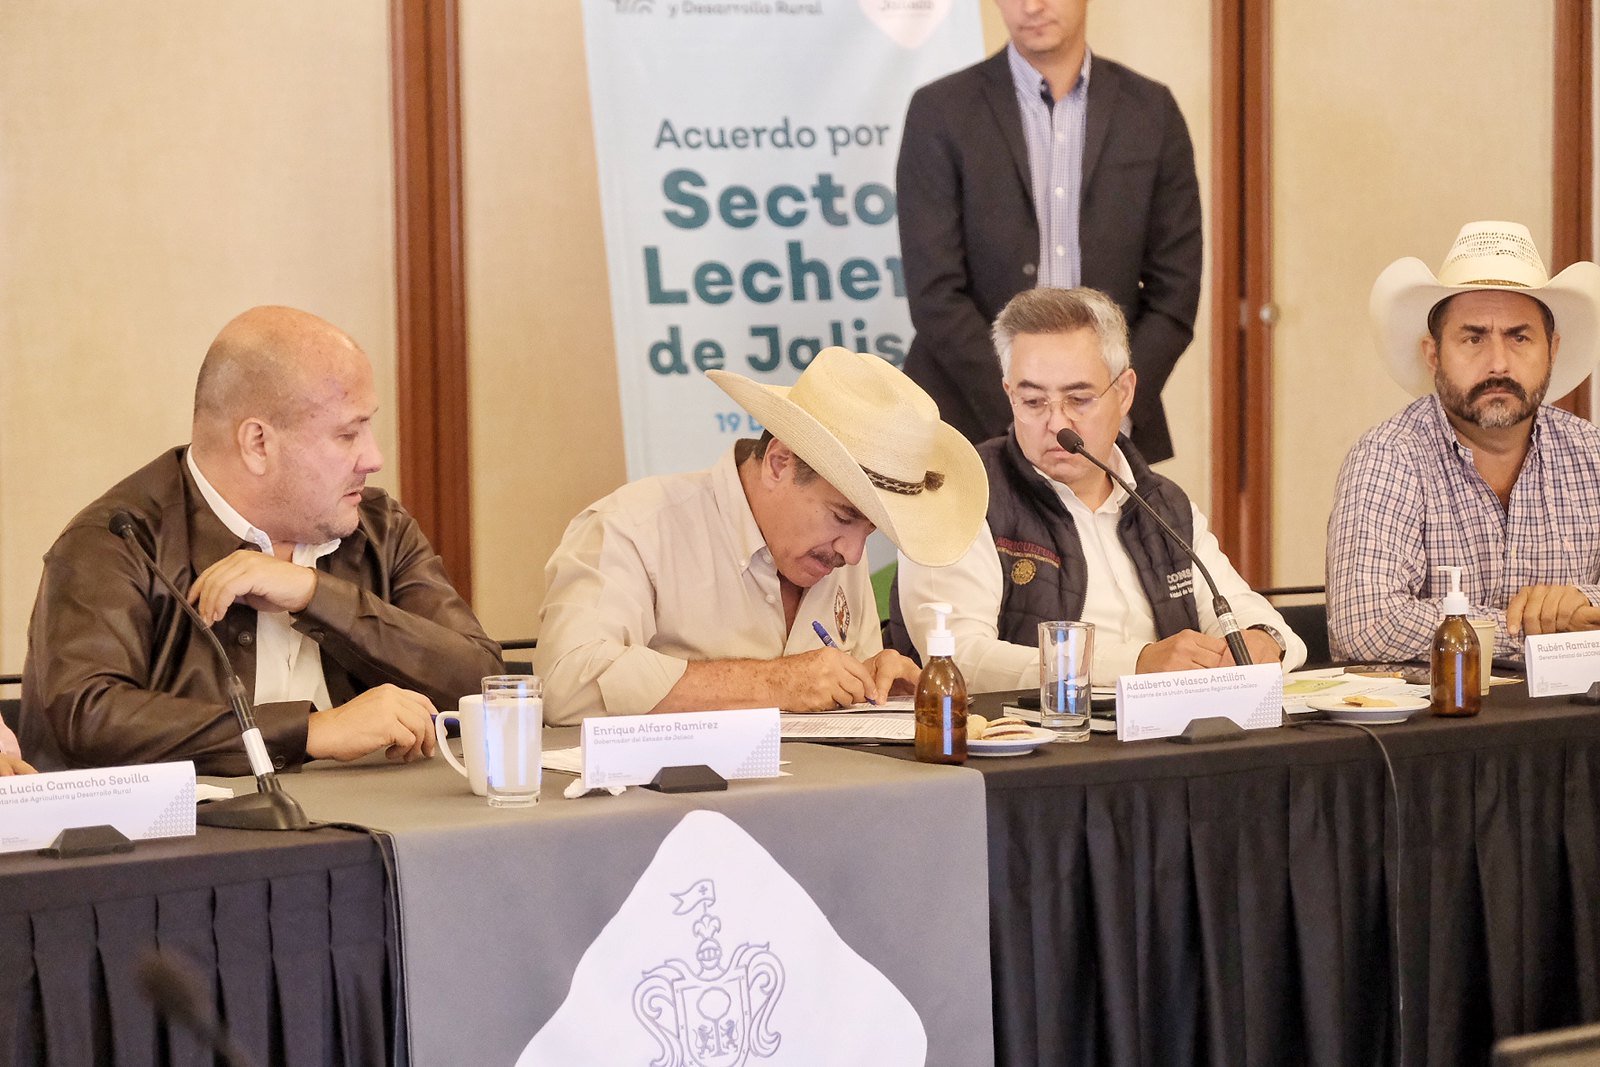 Firman acuerdo por el sector lechero de Jalisco